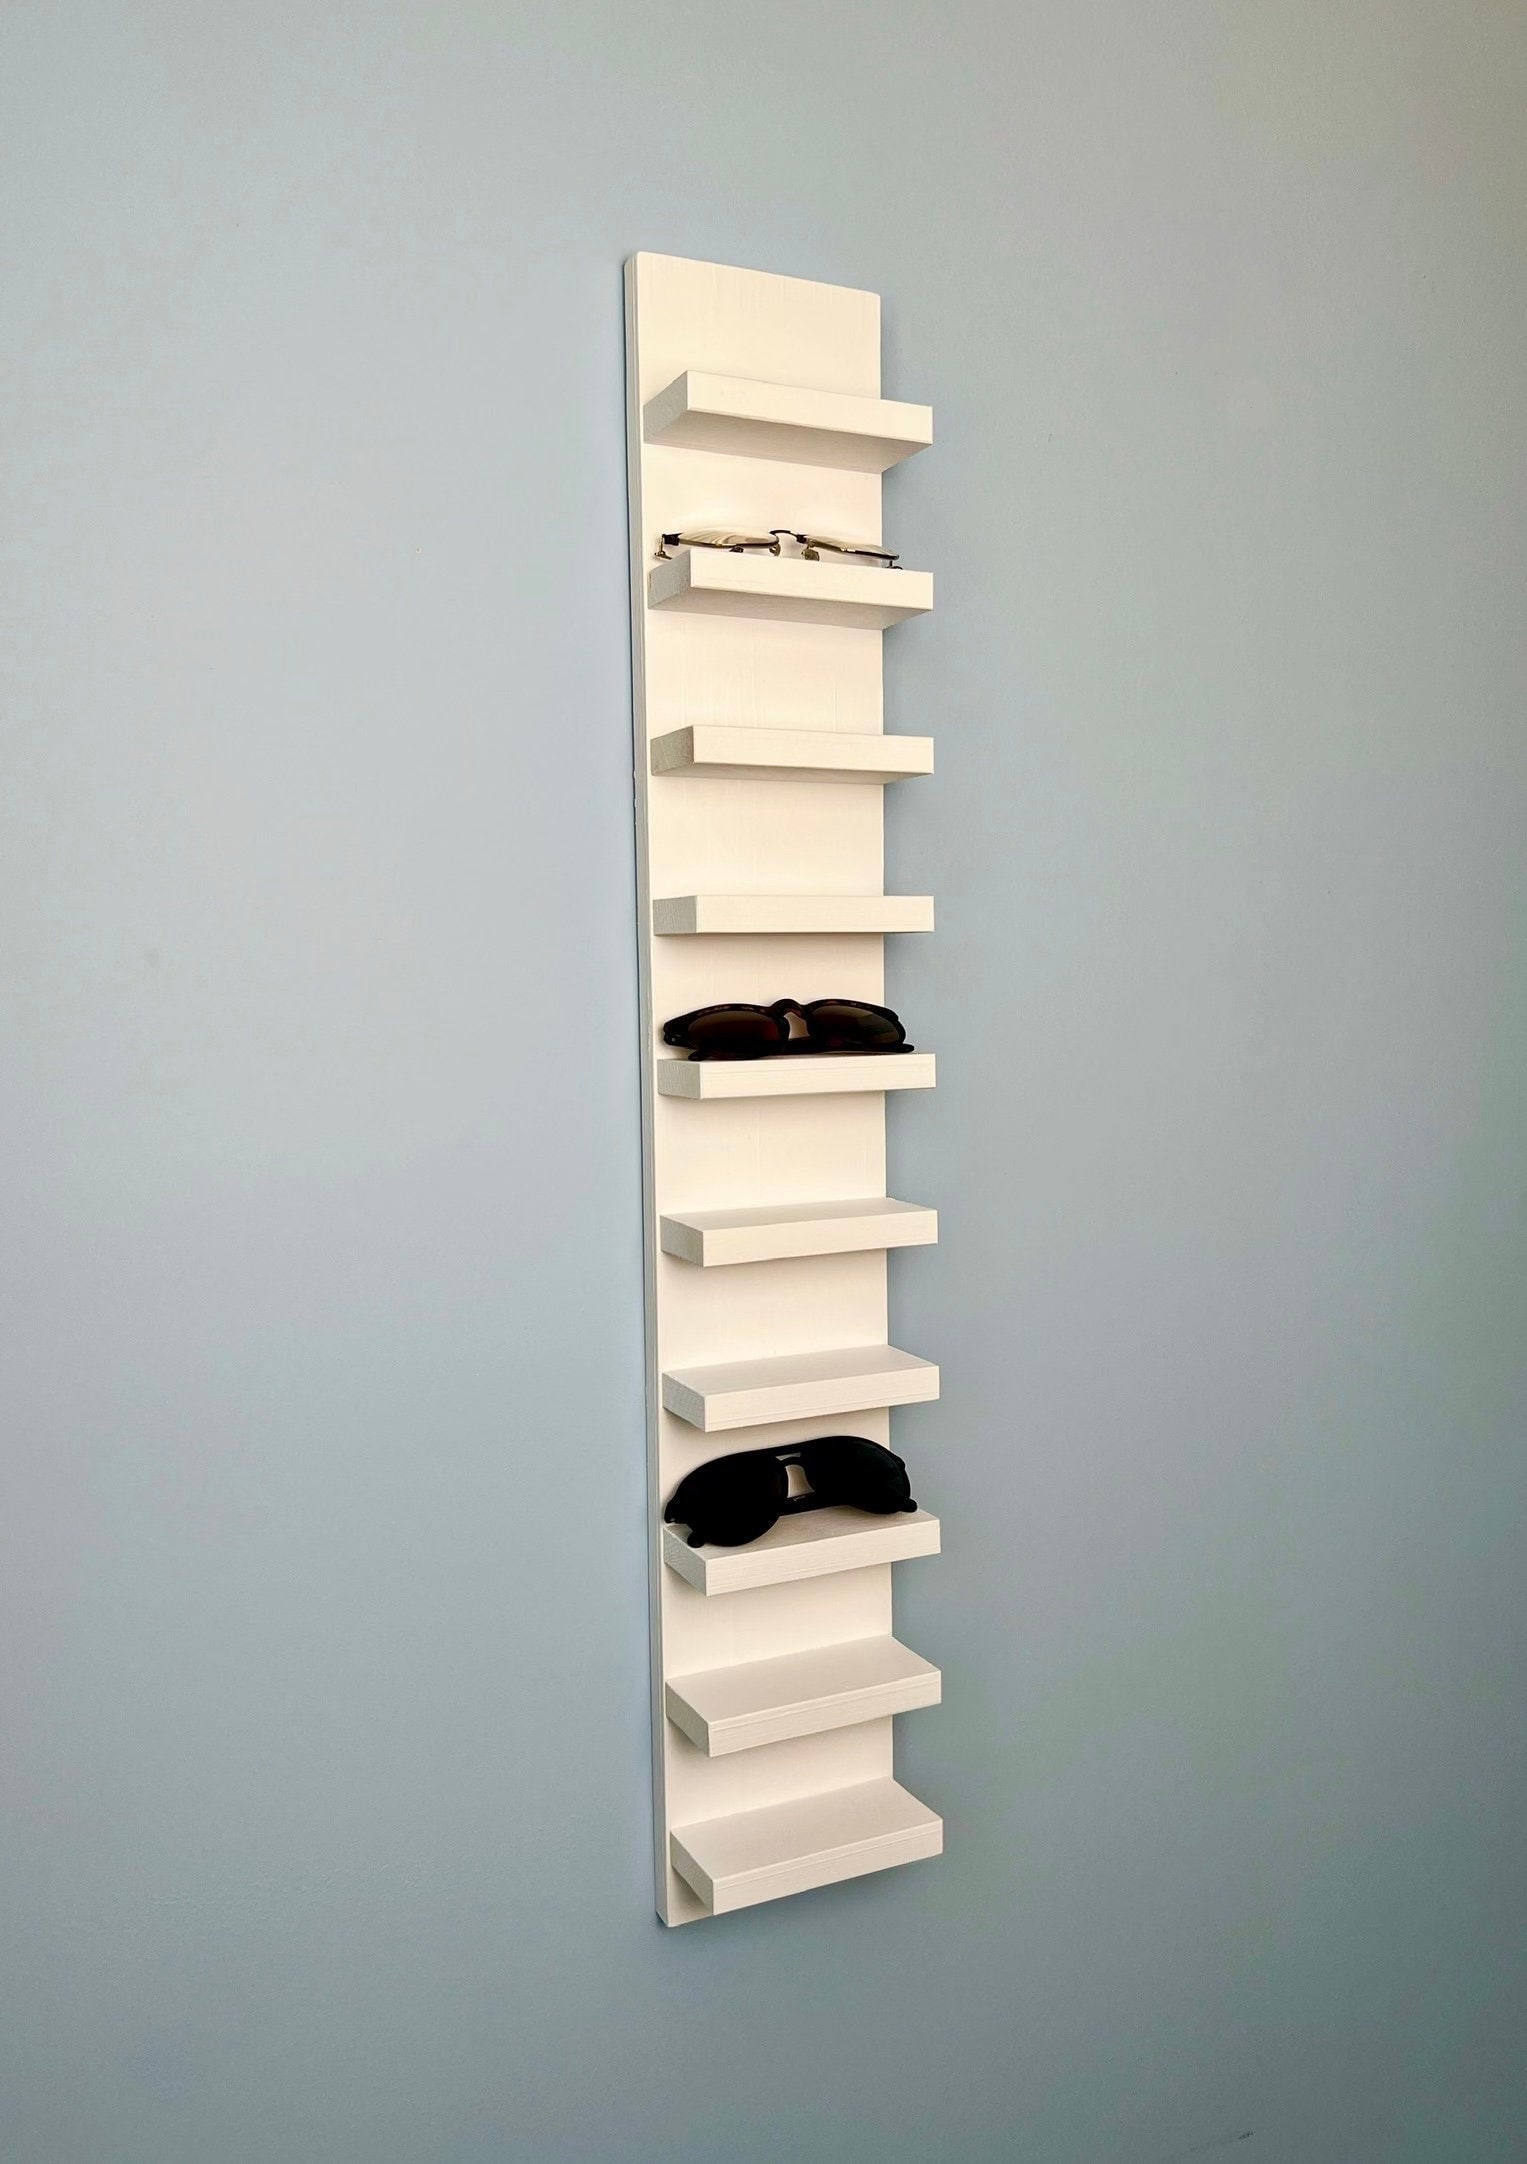 Sunglasses Shelf Extra Large Floating Shelf Entryway Organization Eyeglass  Rack Quality Wooden Hanging Shelf Minimalist 